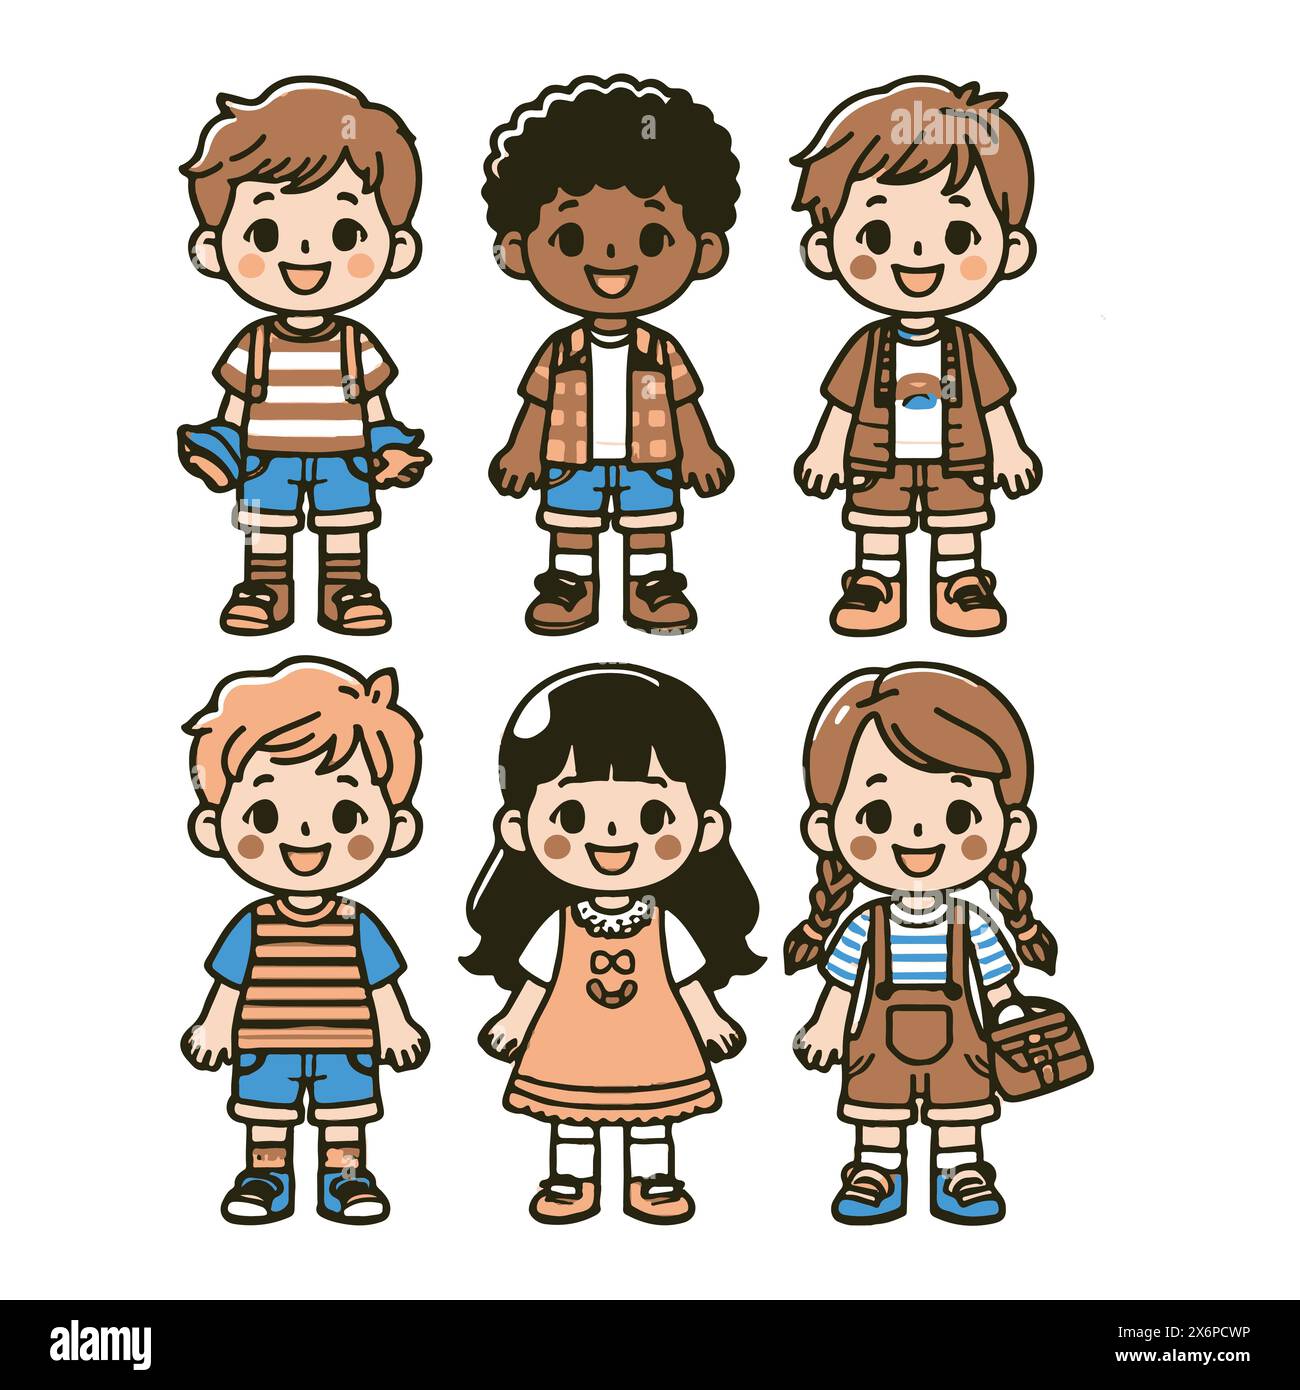 Charming Collection of Child Character Vector Illustrations: Diverse Ausdrücke für kreative und verspielte Designs Stock Vektor